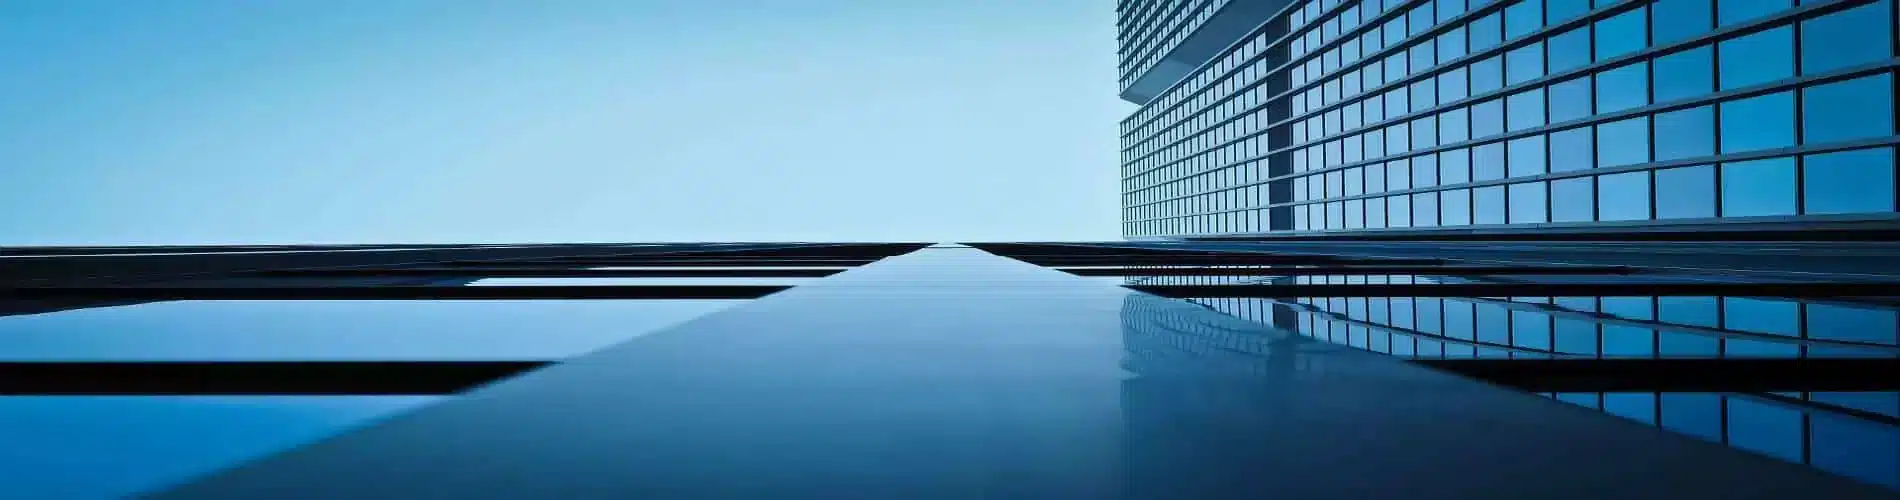 Headerbild von Gebäudetechnik NRW mit Gebäude aus Glasfront und Wasser.